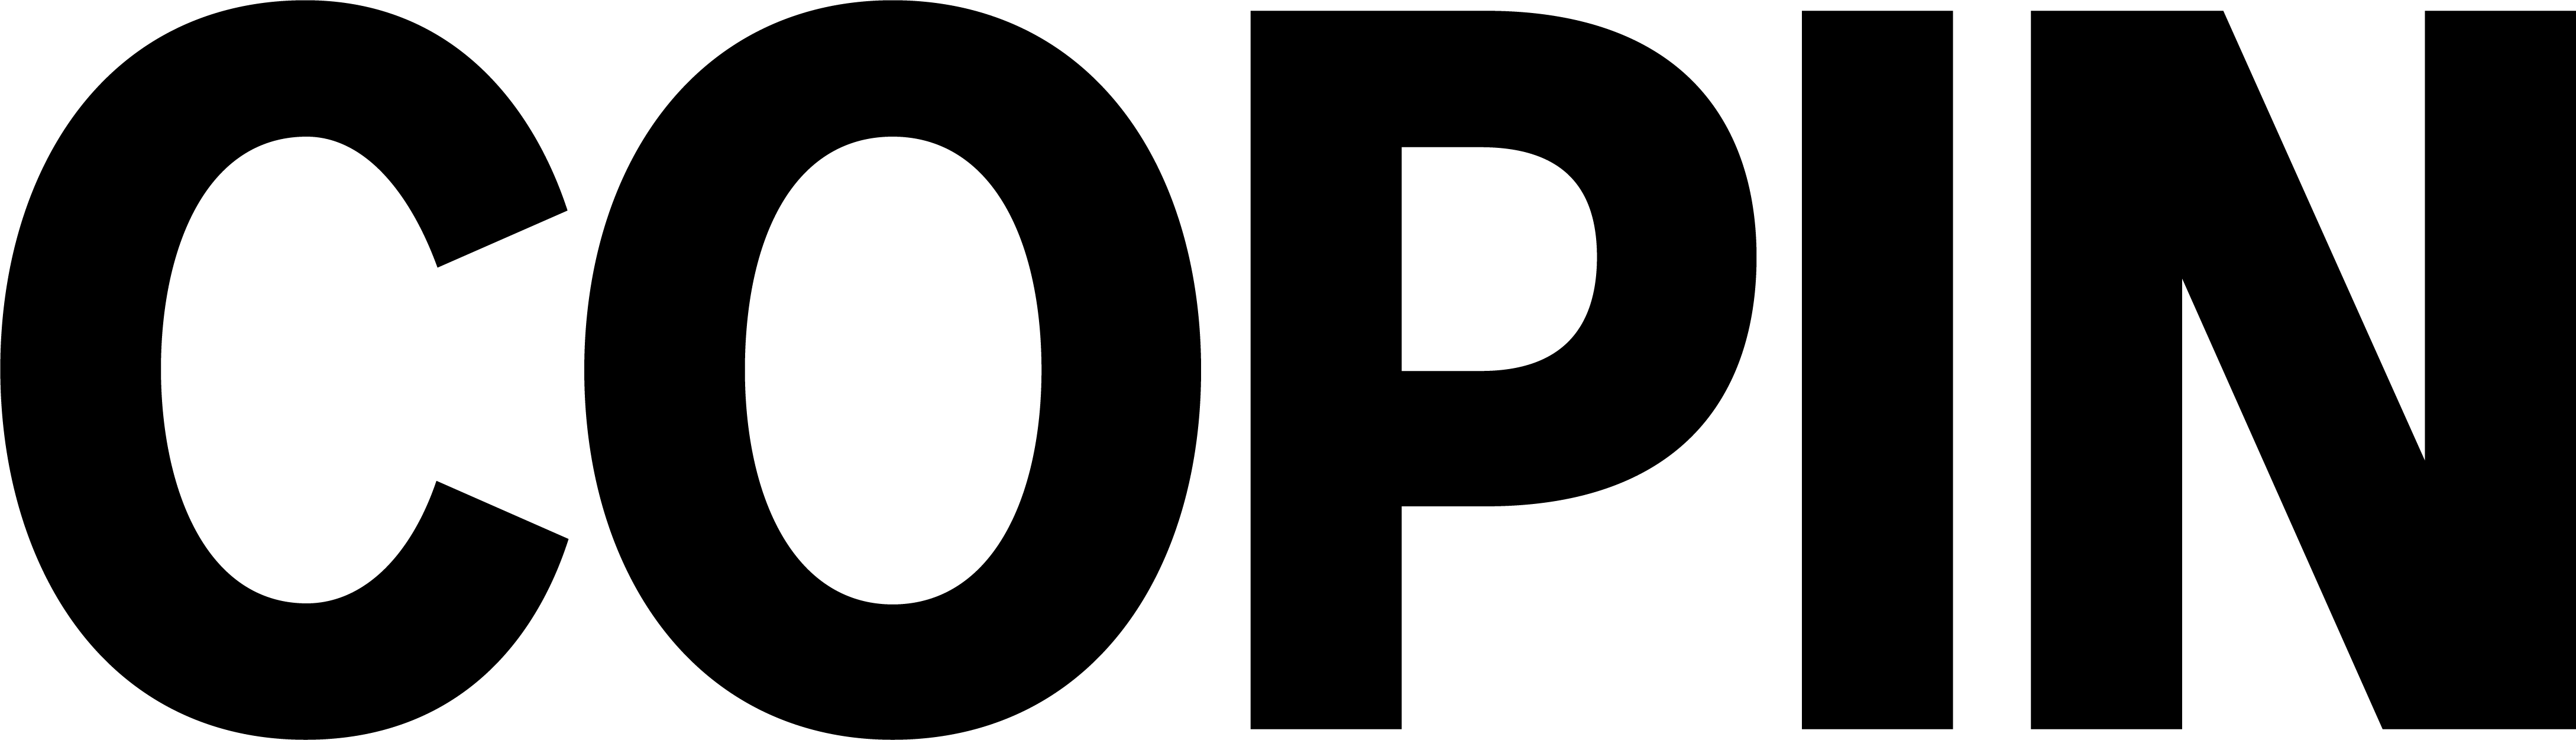 logo noir copin